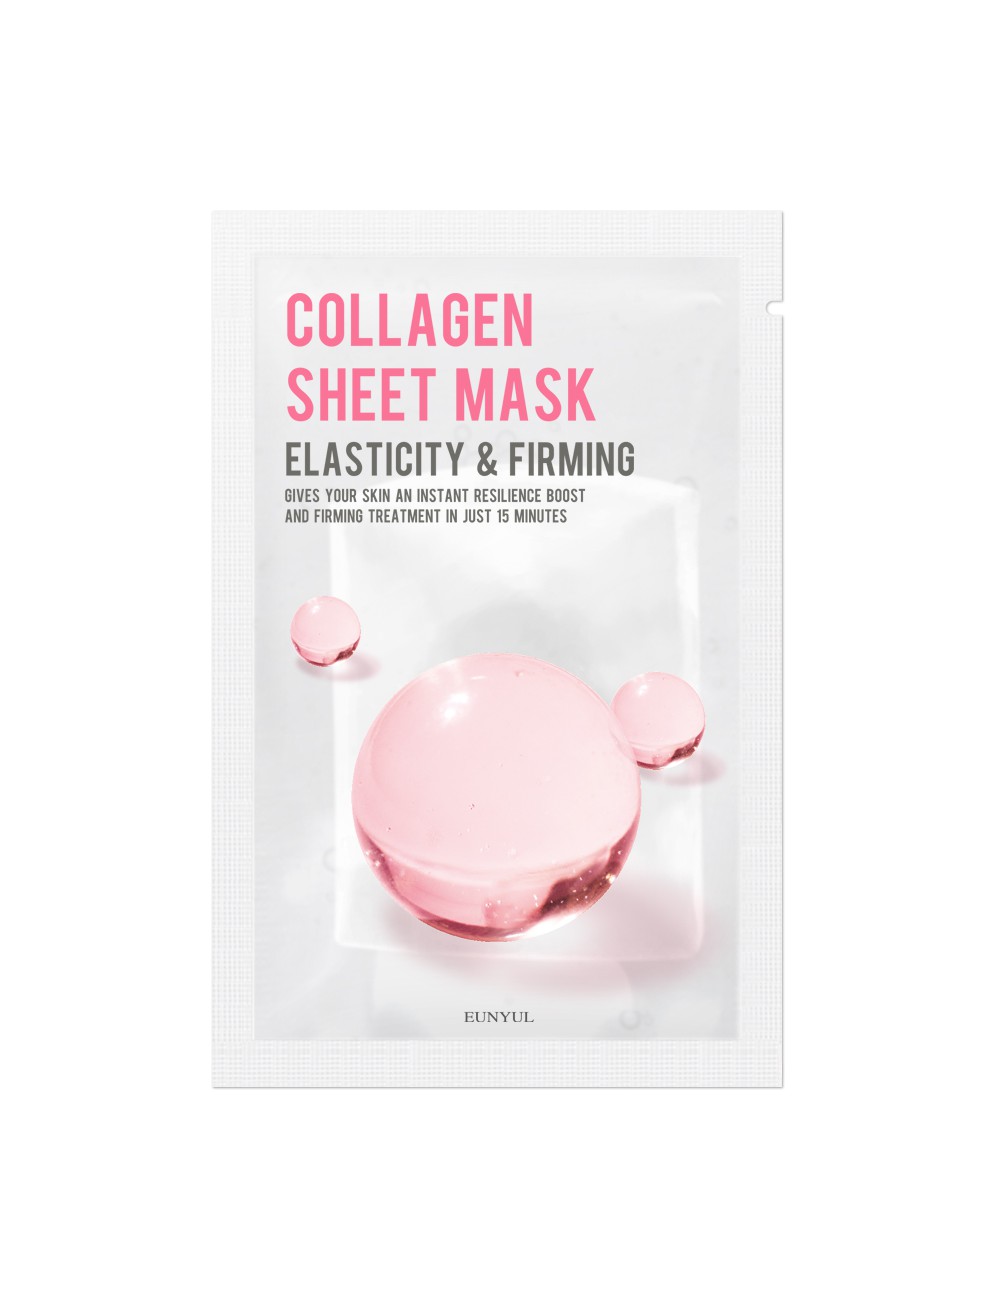 collagen-sheet-mask-ujedrniajaco-uelastyczniajaca-maseczka-w